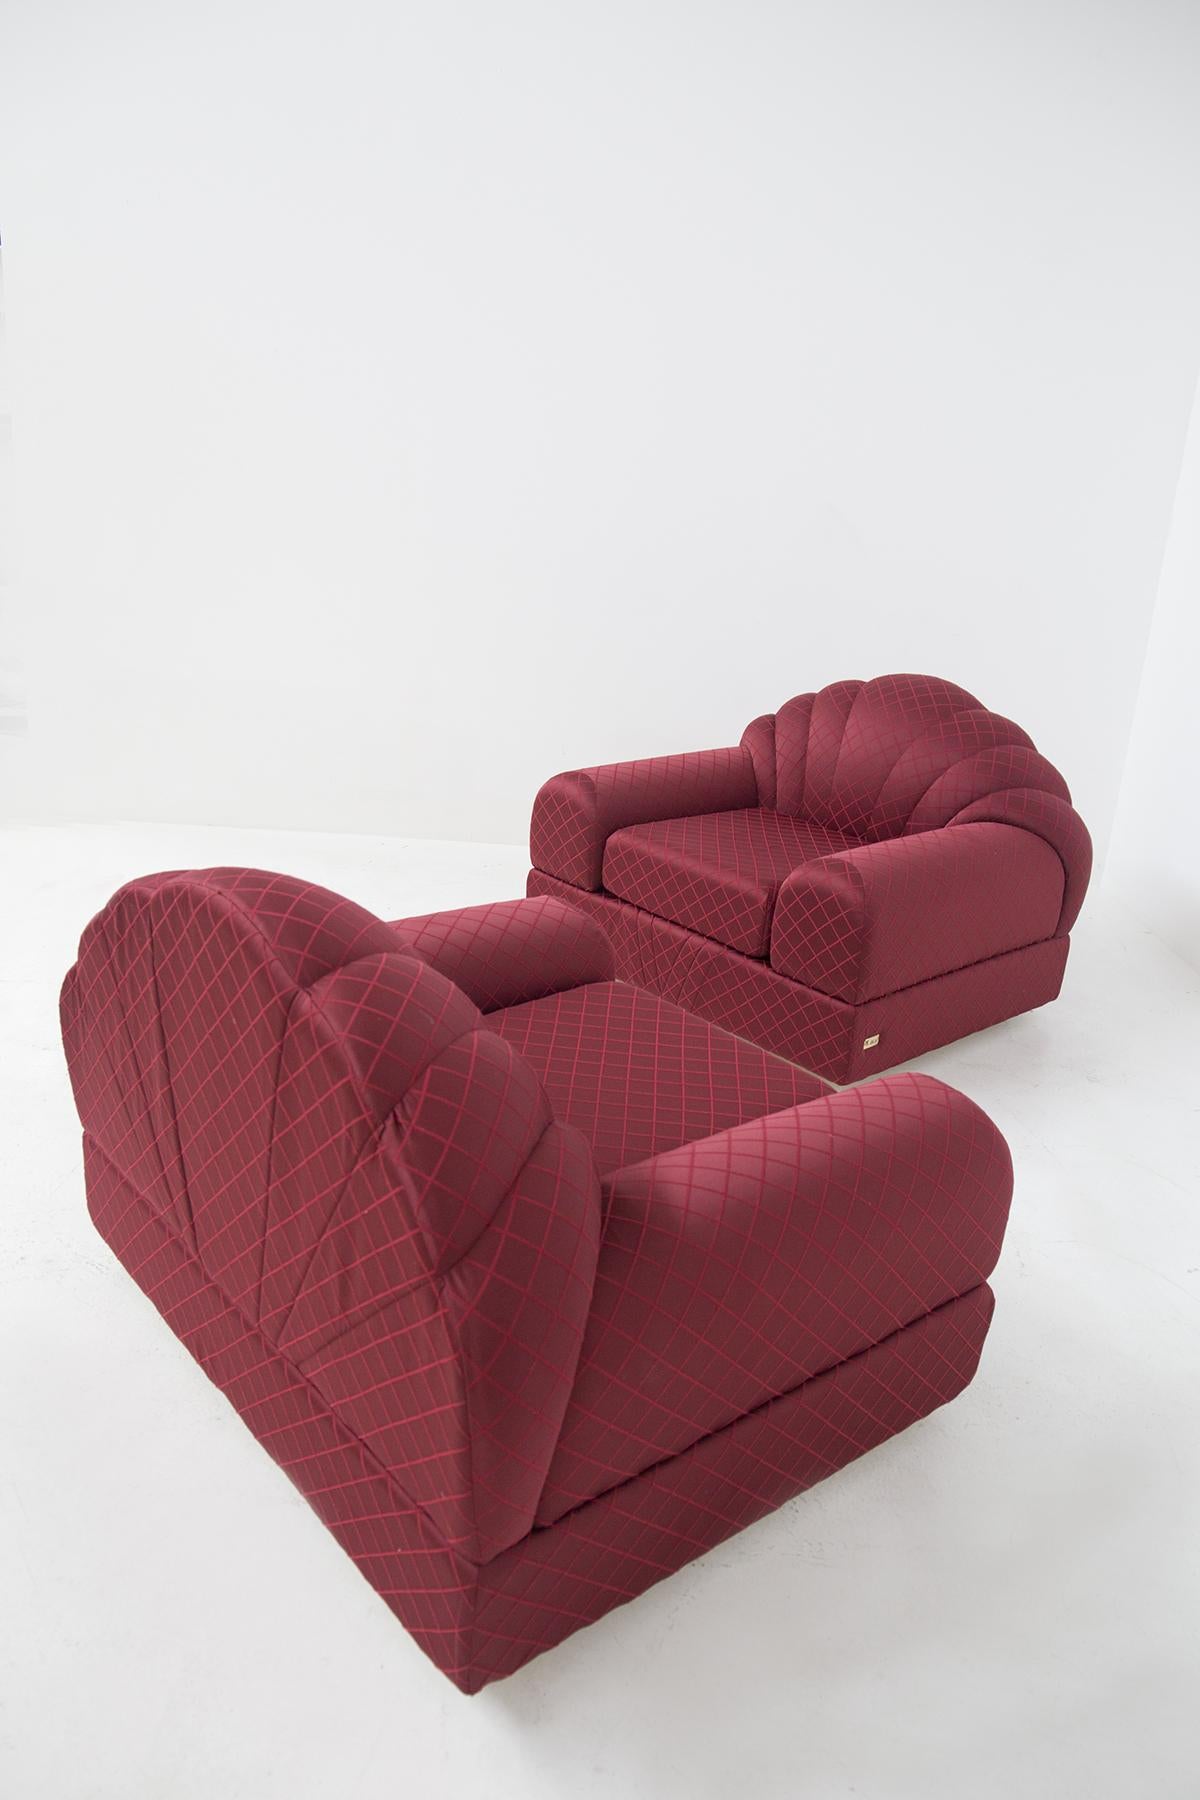 Alain Delon Vintage “Salon” Red Armchairs, Original Label For Sale 4